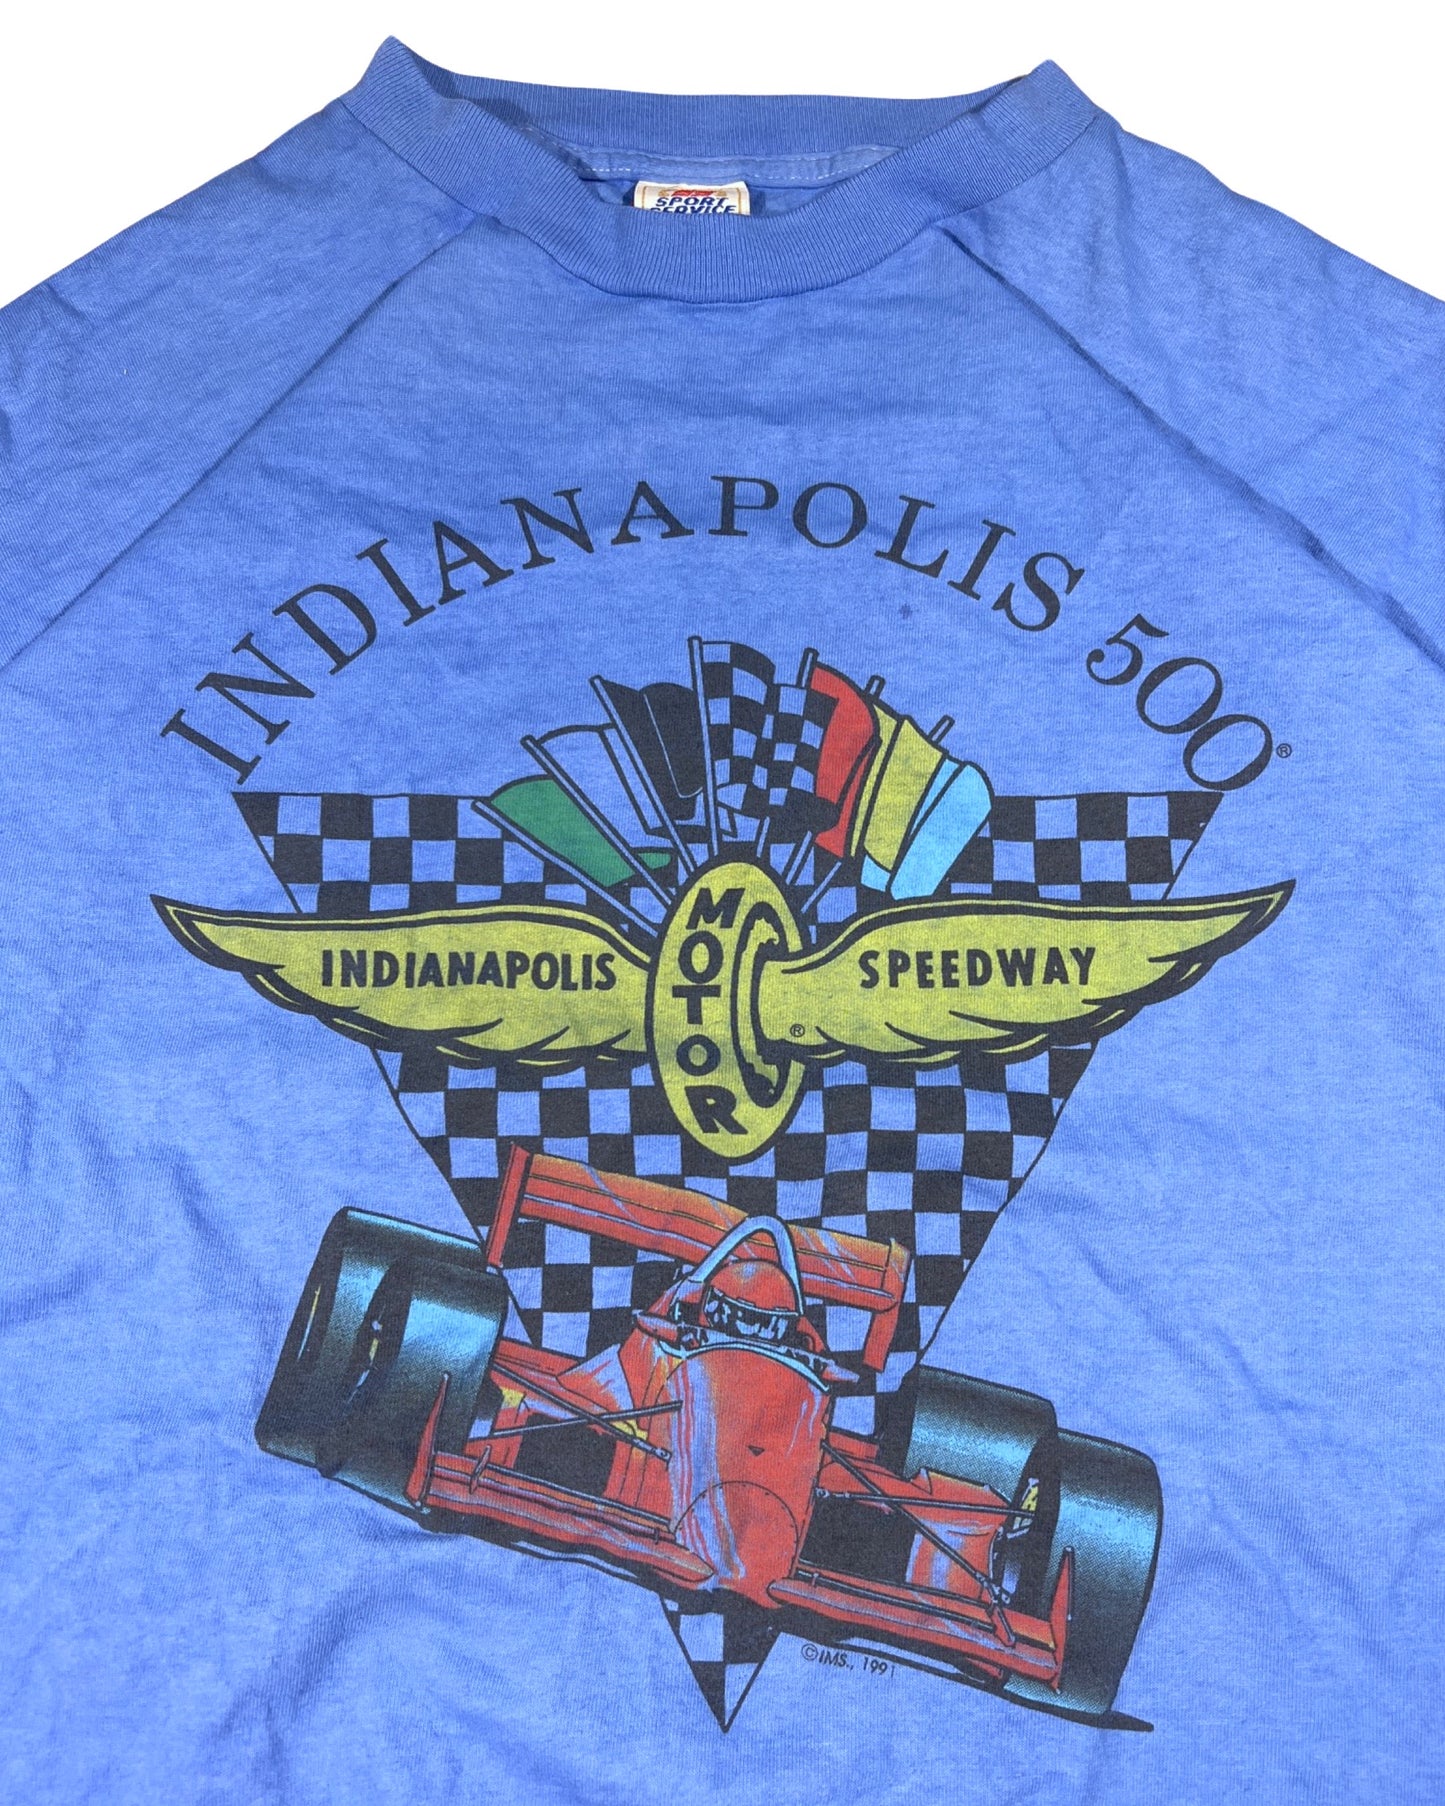 Vintage Speedway Tee - XL